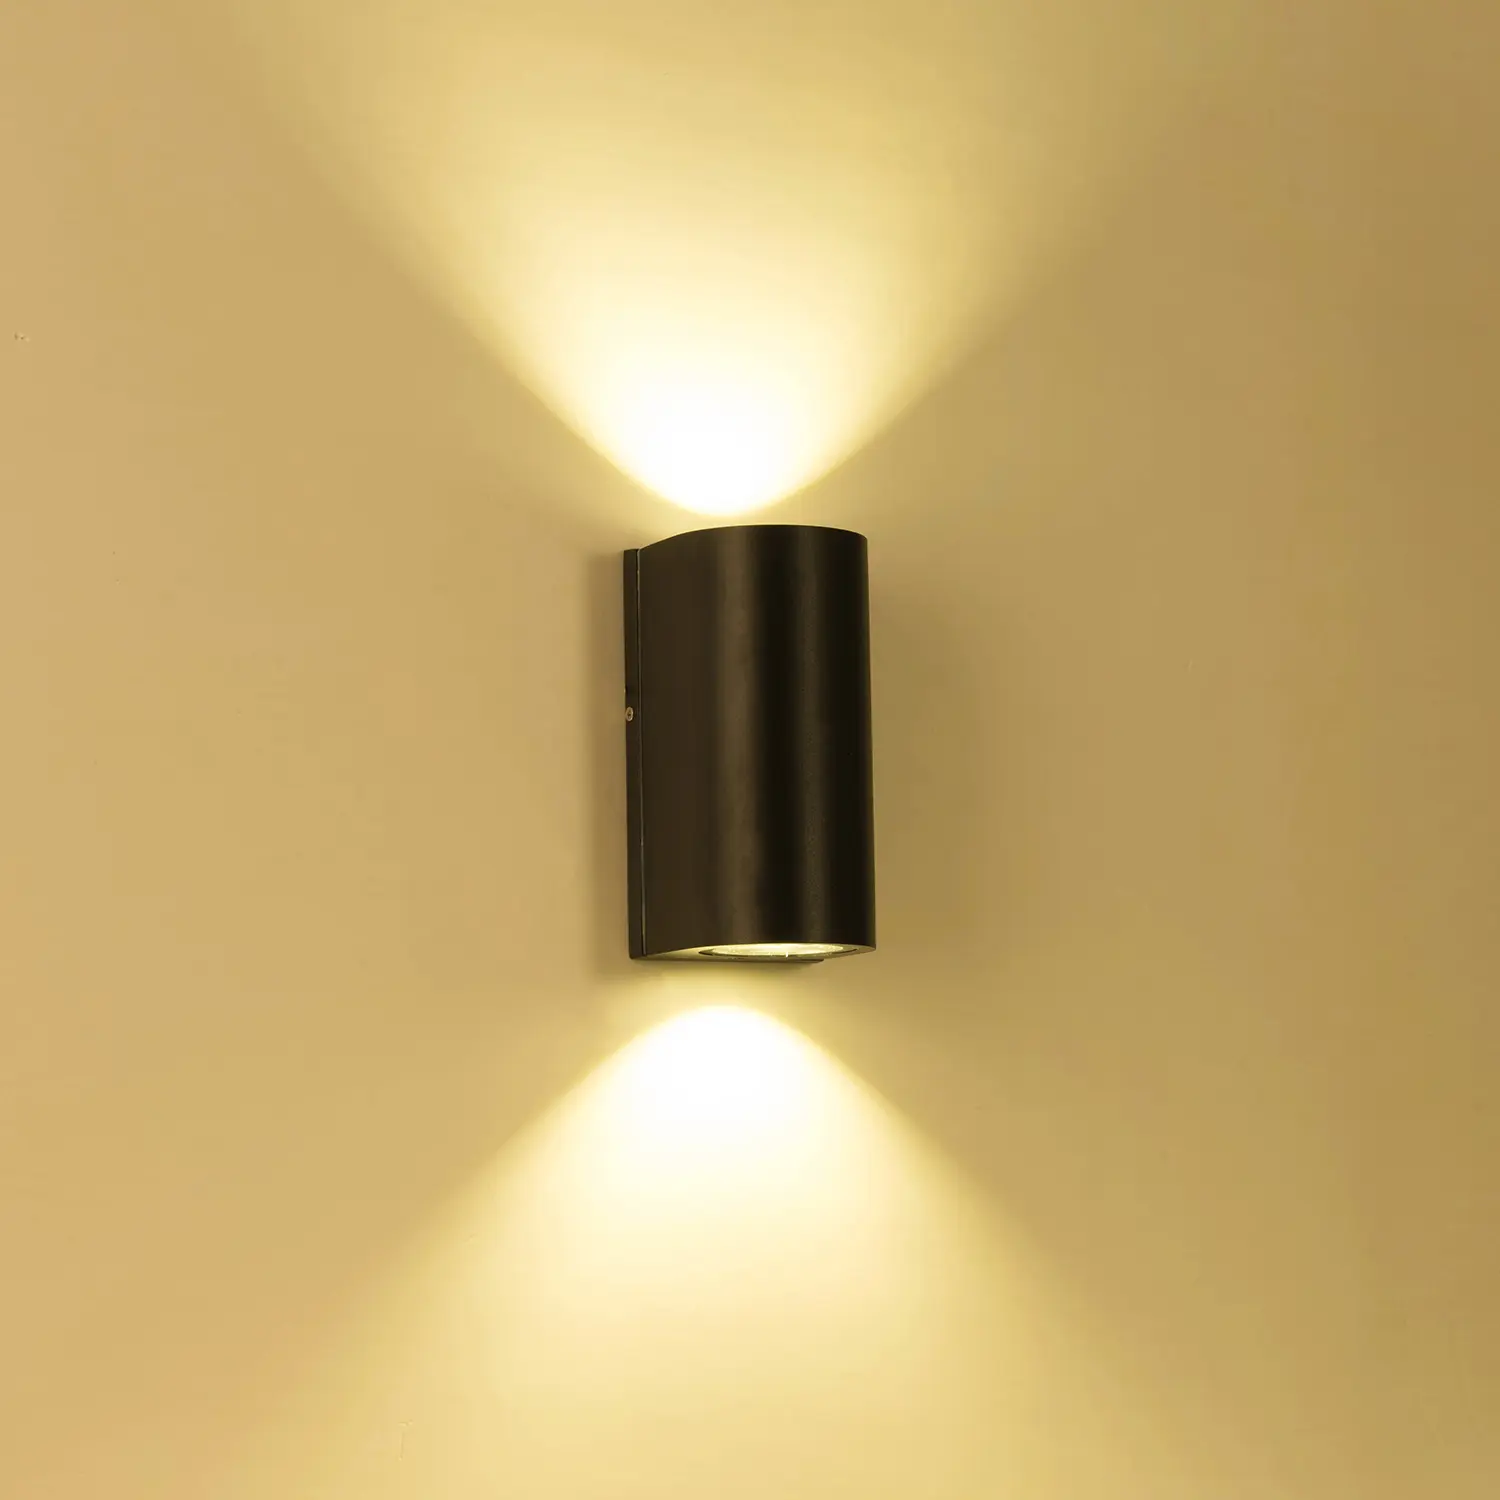 Kültéri fali LED lámpa 6W fekete IP65 vízálló (OUTDOOR-LED-1009-BLACK)